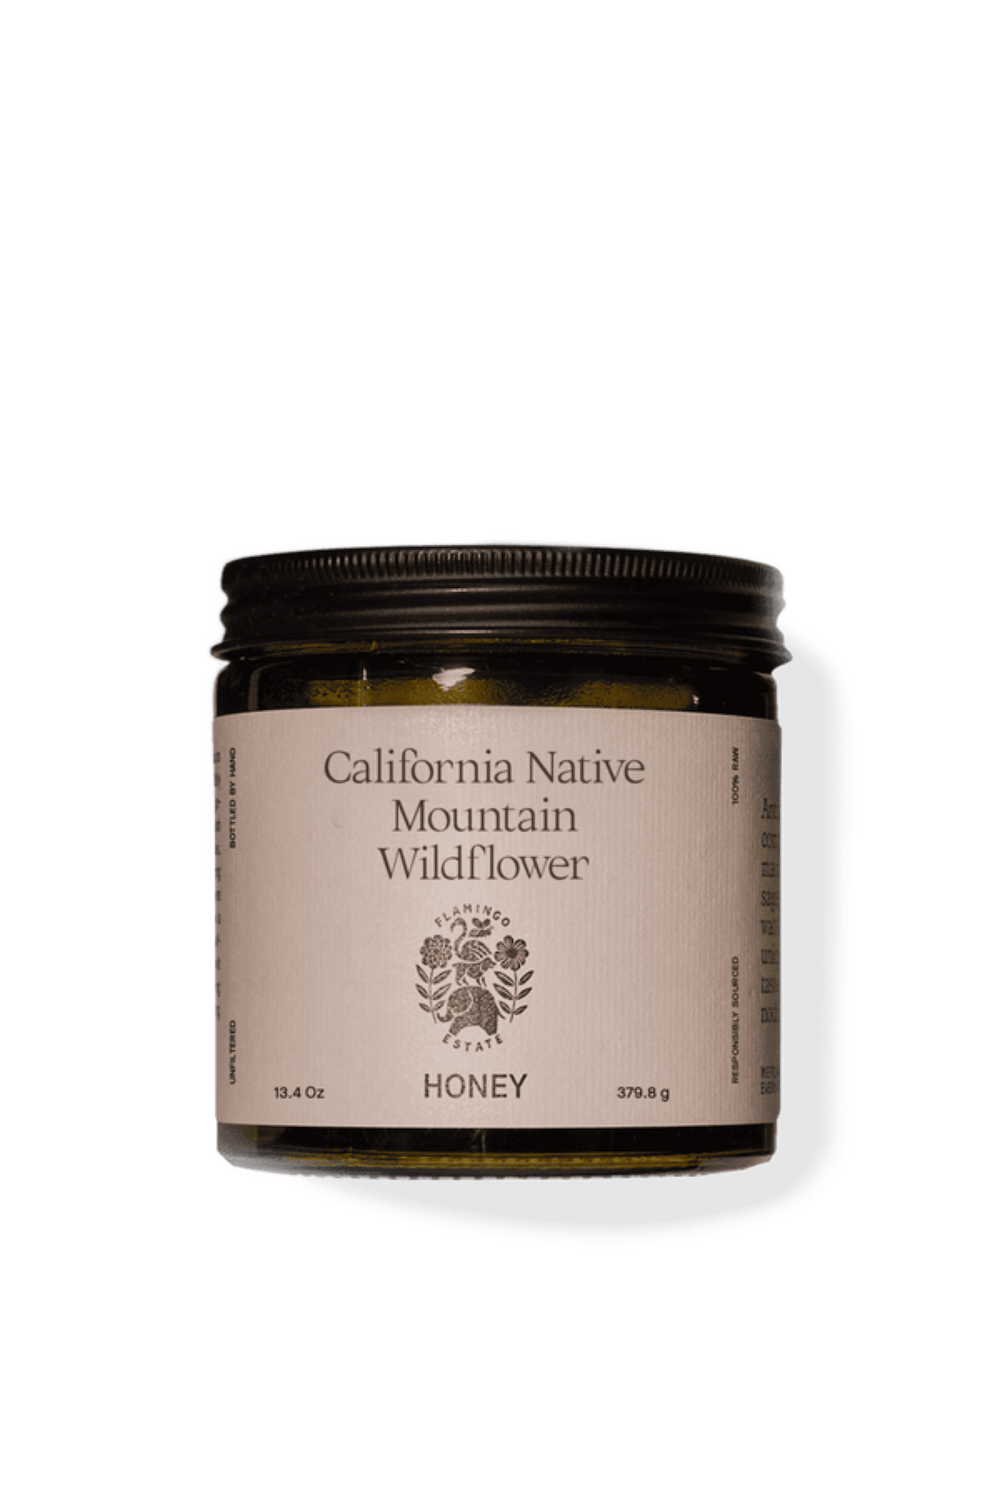 California Native Wildflower Honey